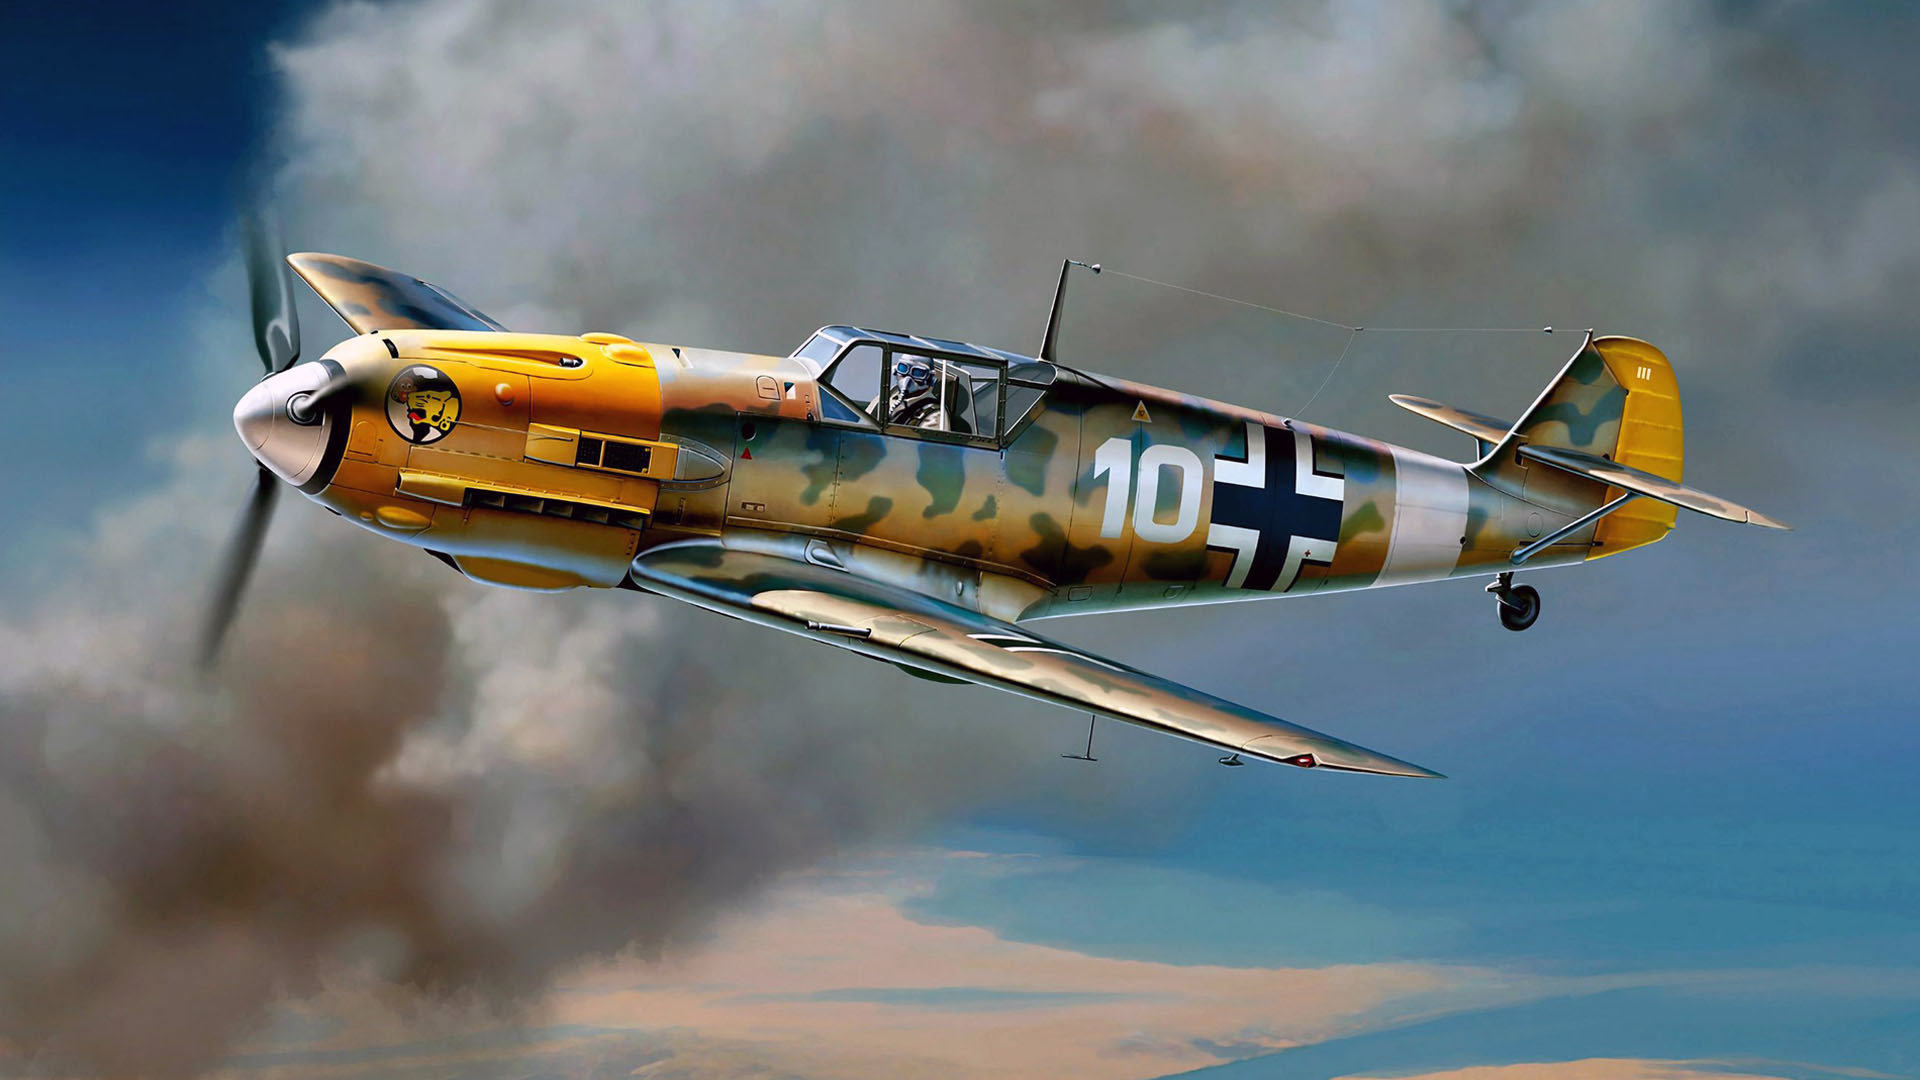 Free Messerschmitt Bf 109 high quality wallpaper ID:157062 for full hd 1080p computer